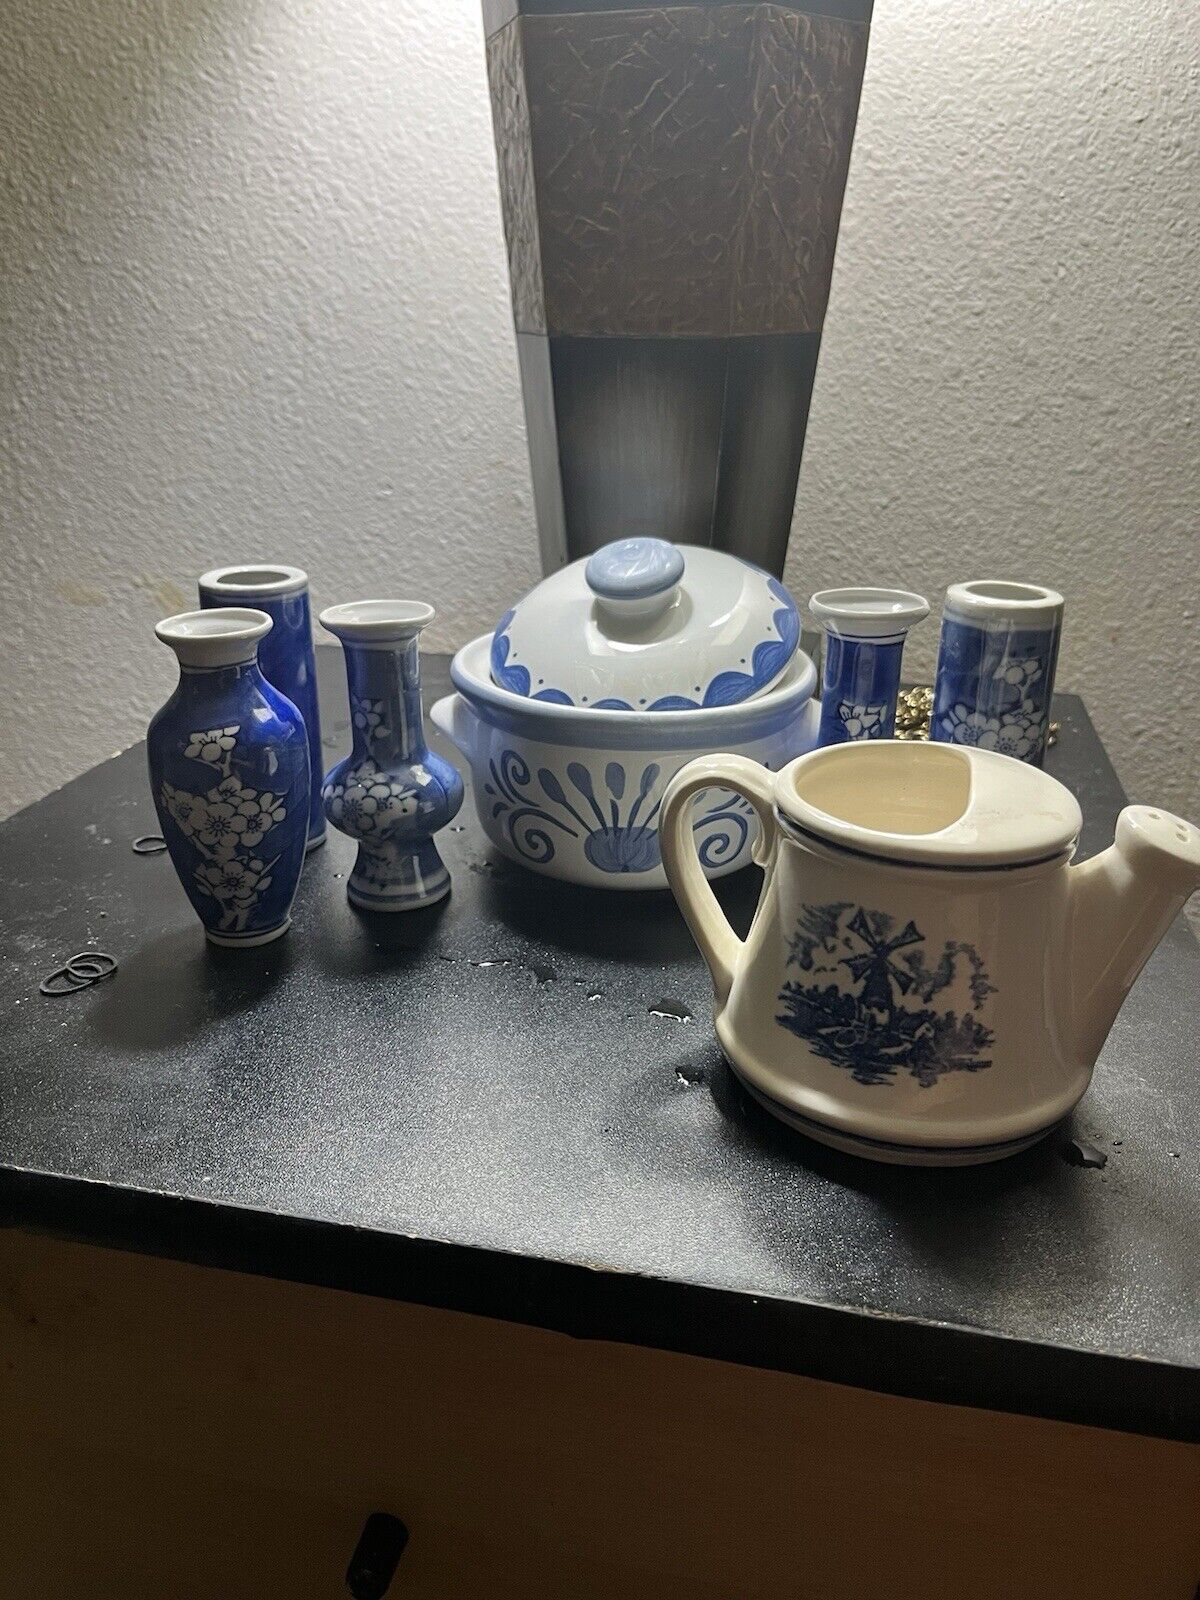 Porcelain Set